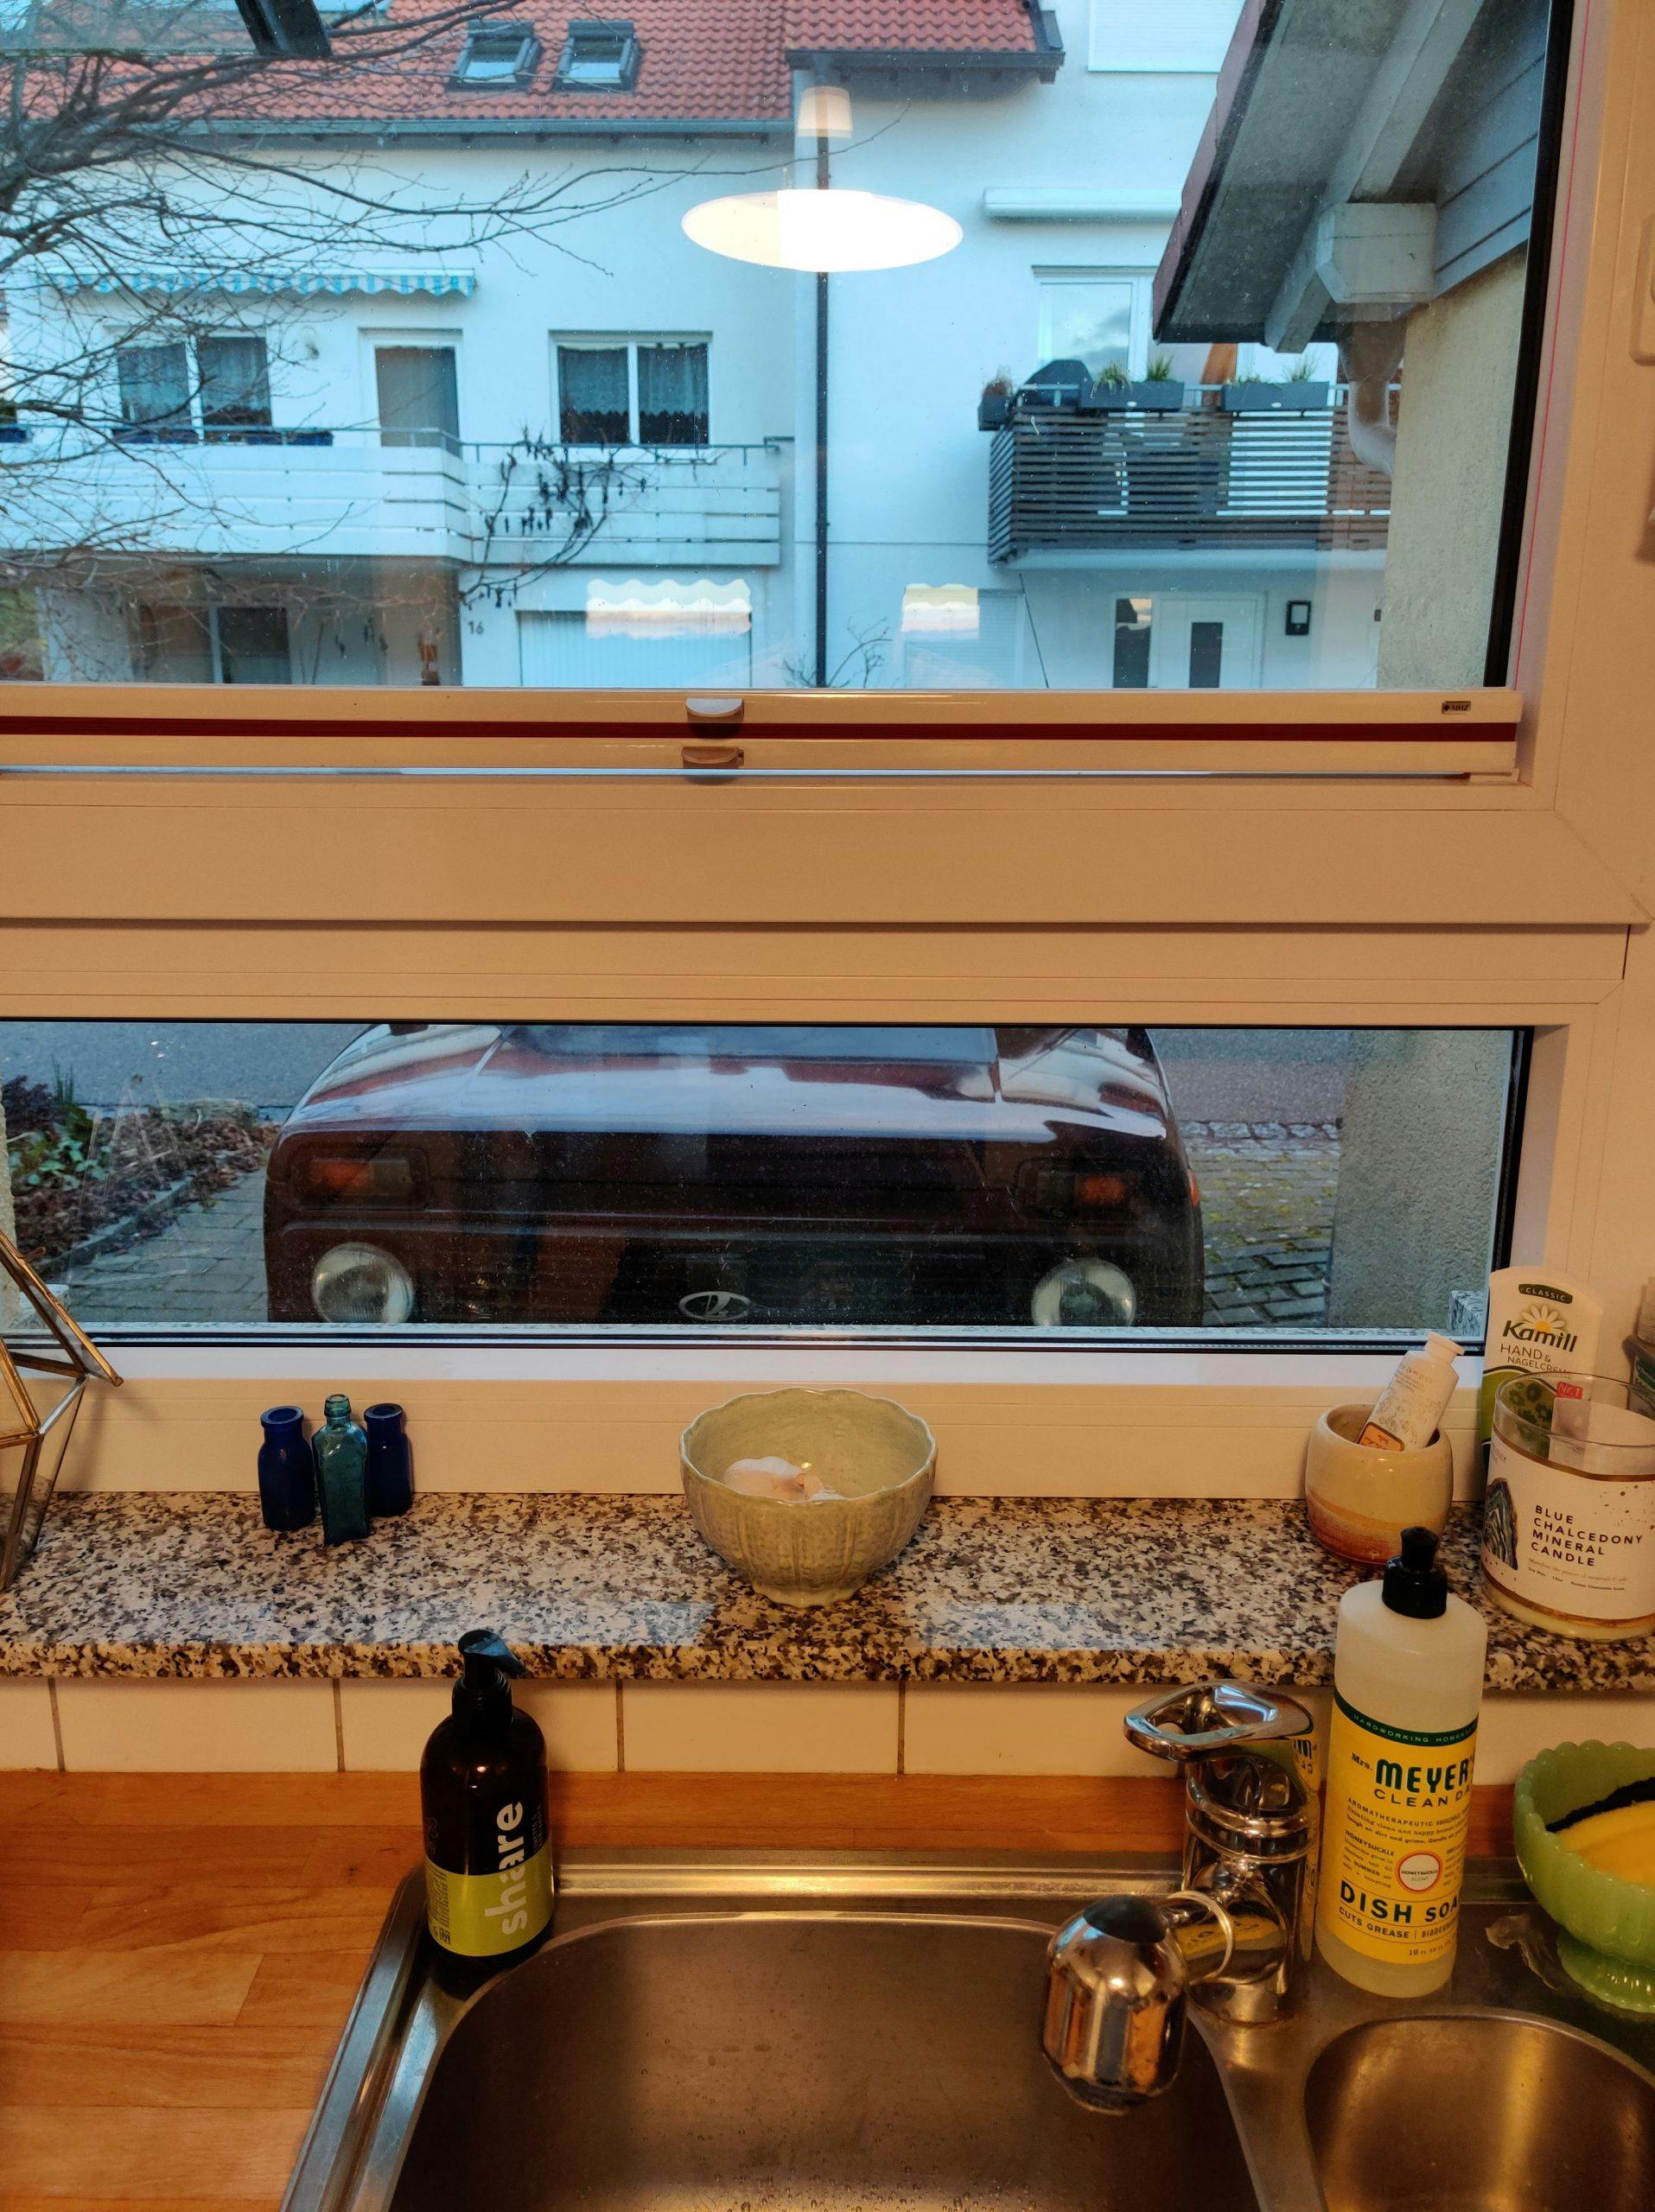 lada niva from kitchen window